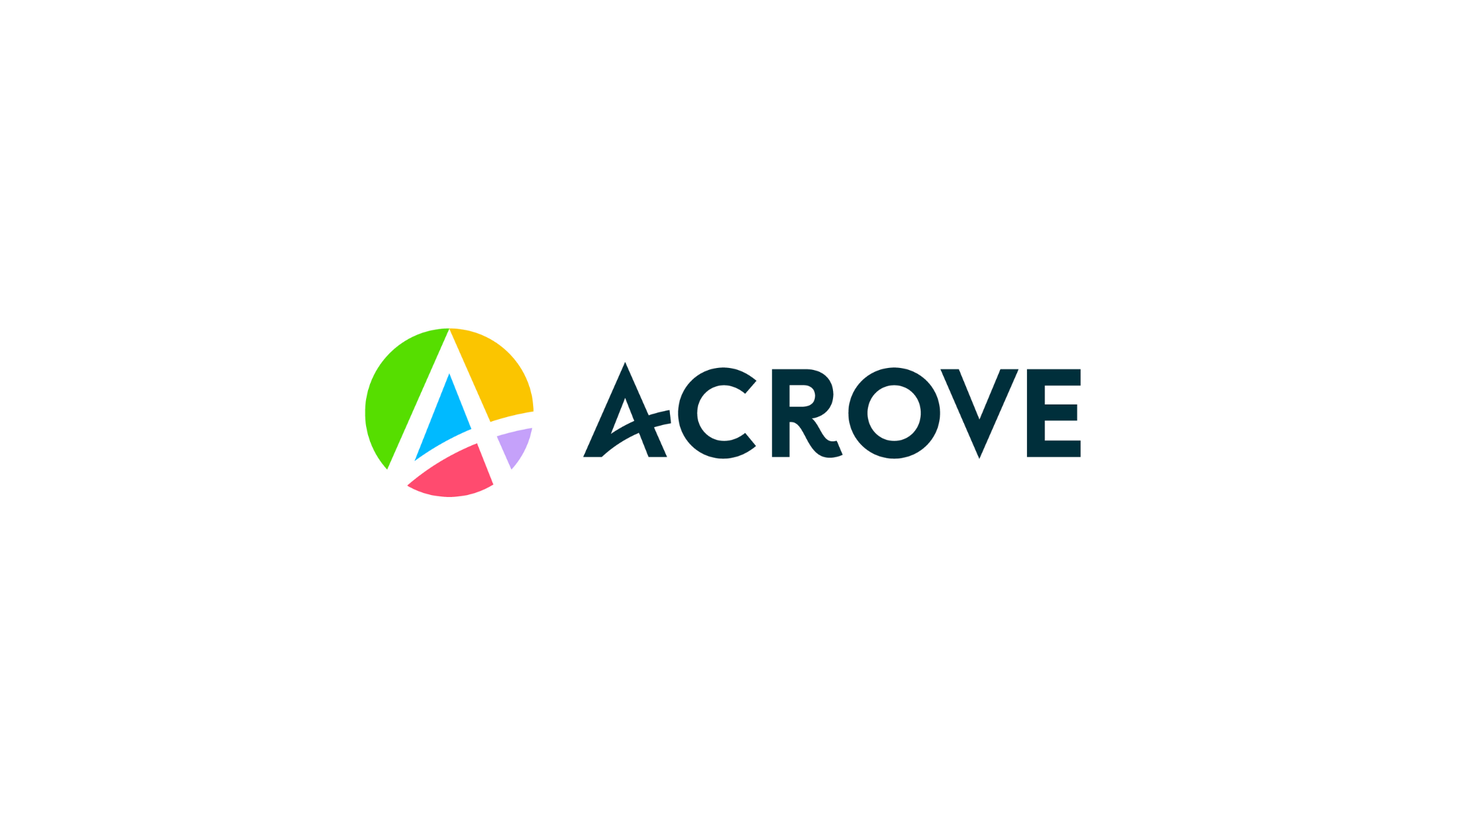 株式会社ACROVEが、サイバーエージェント・キャピタル及びイーストベンチャーズを引受先とする第三者割当増資を実施。